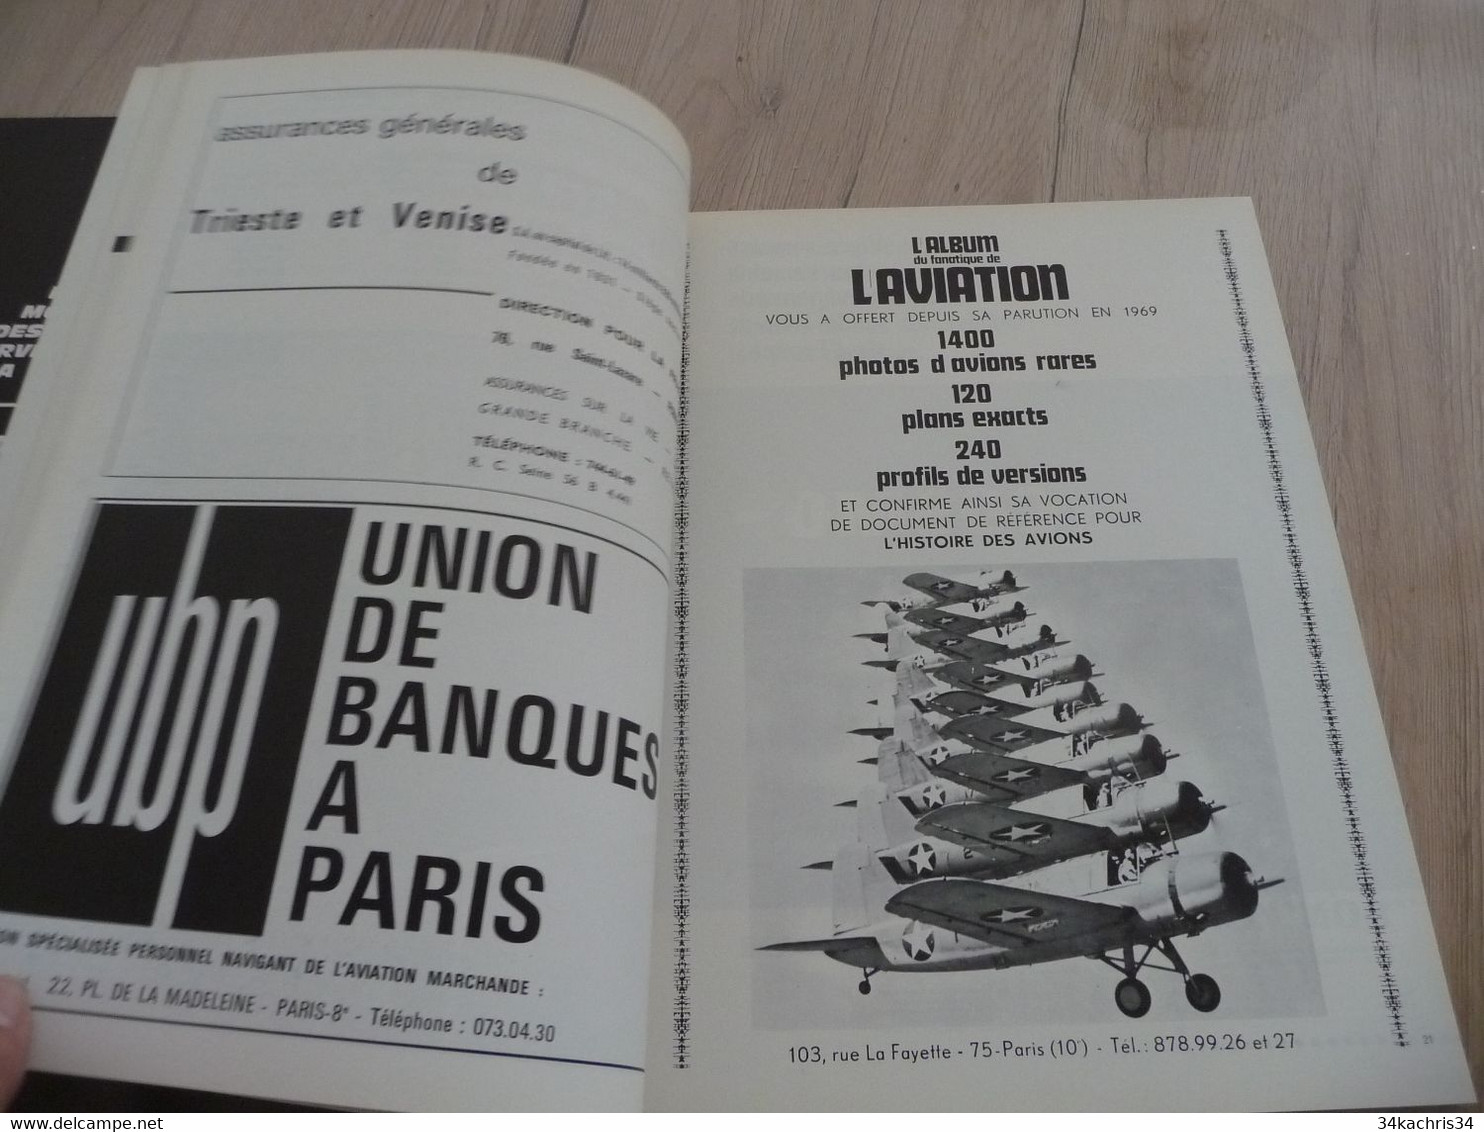 Revue aviation Air Plane Icare avec photos textes et pub N°59 1939/40 la bataille de France Volume IV 1971